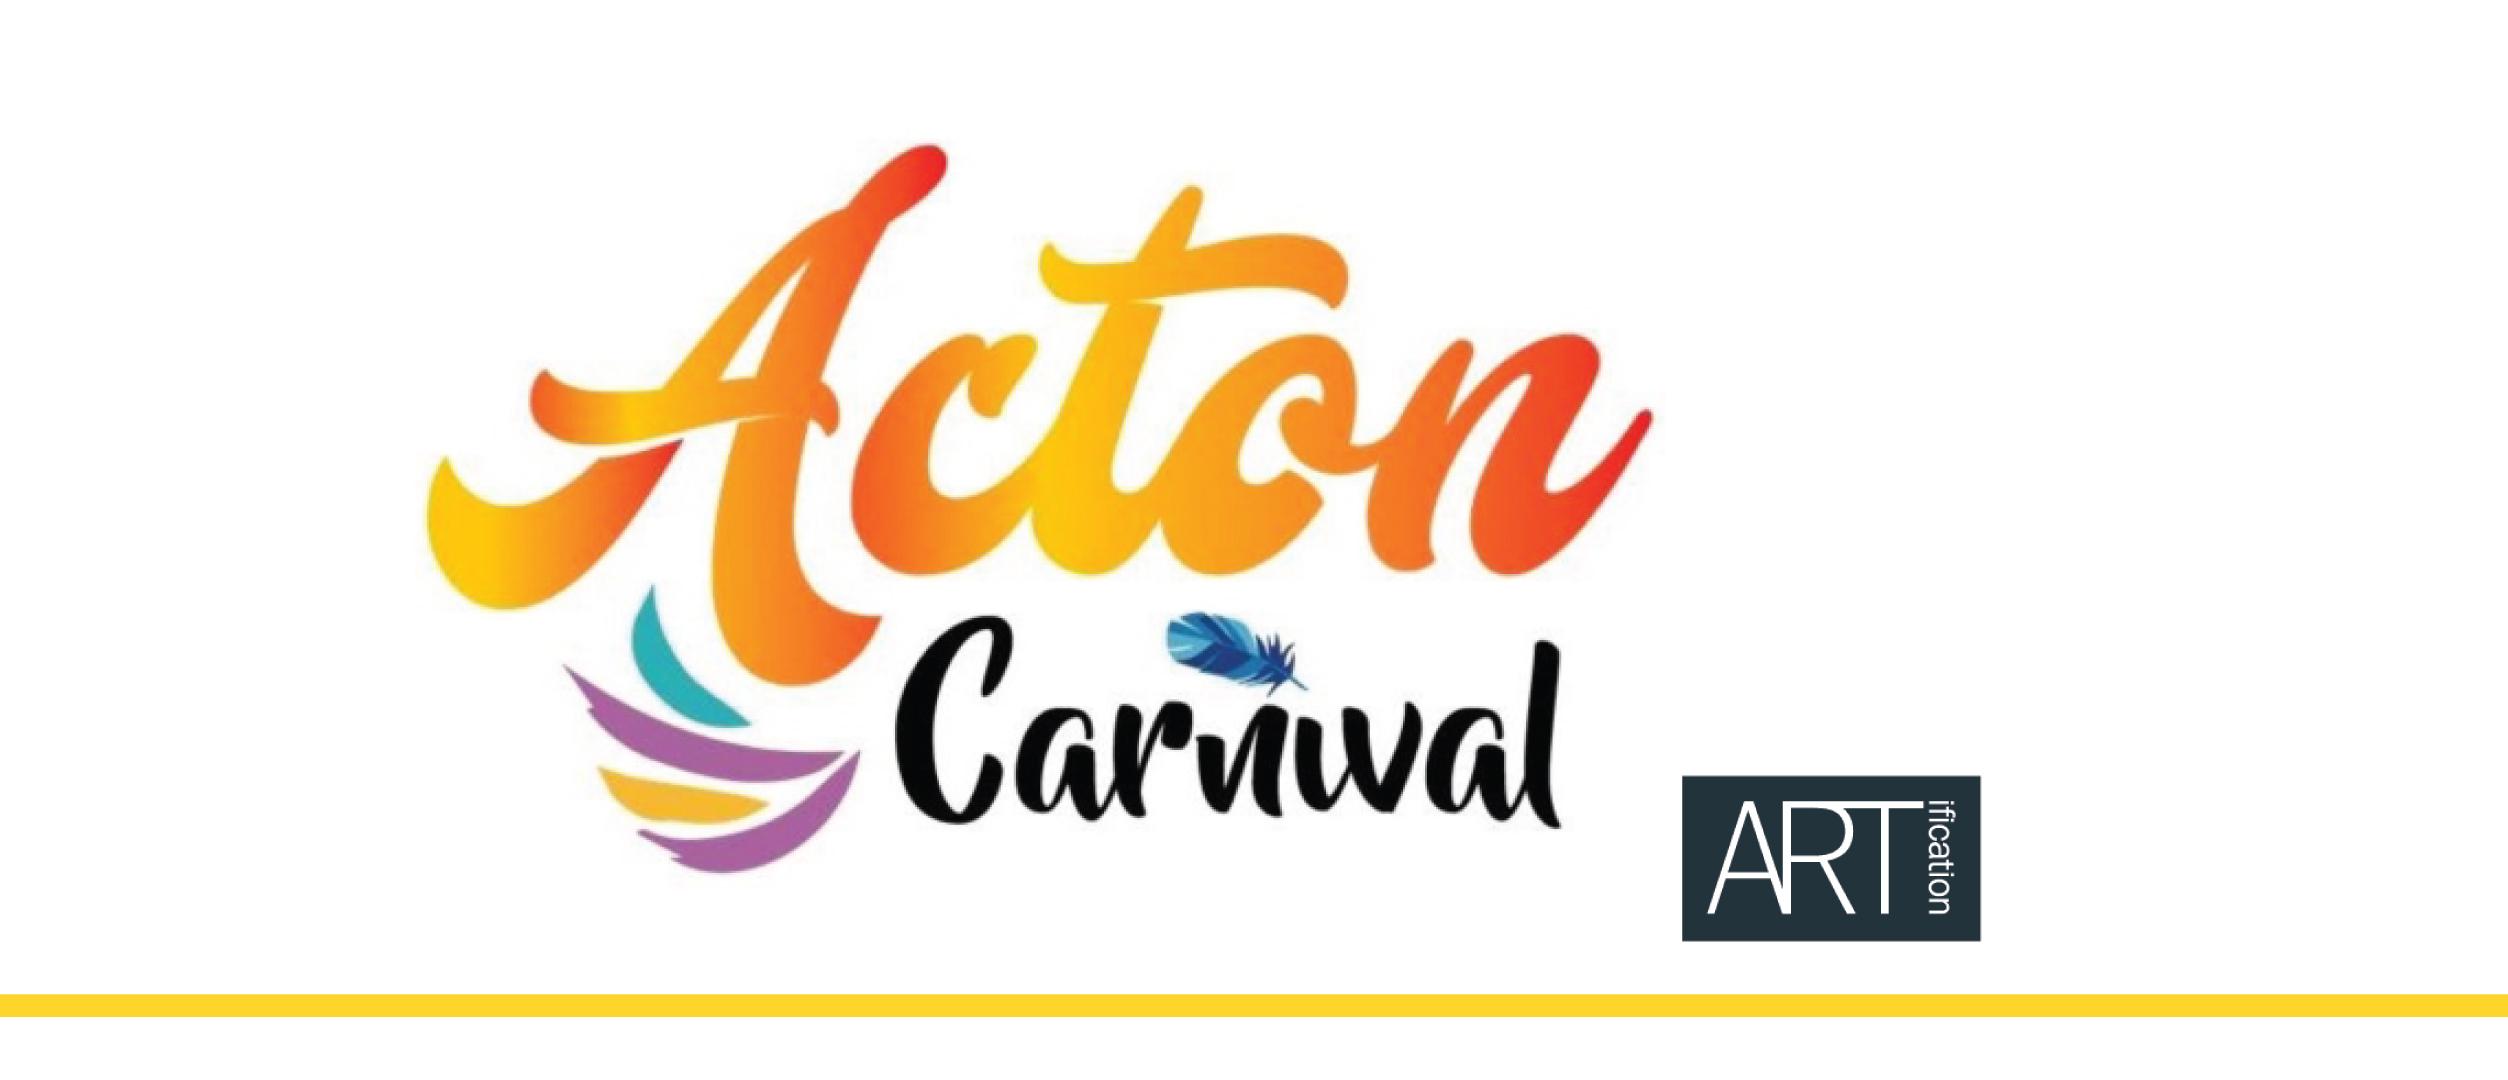 Acton Carnival 2019 ARTi event